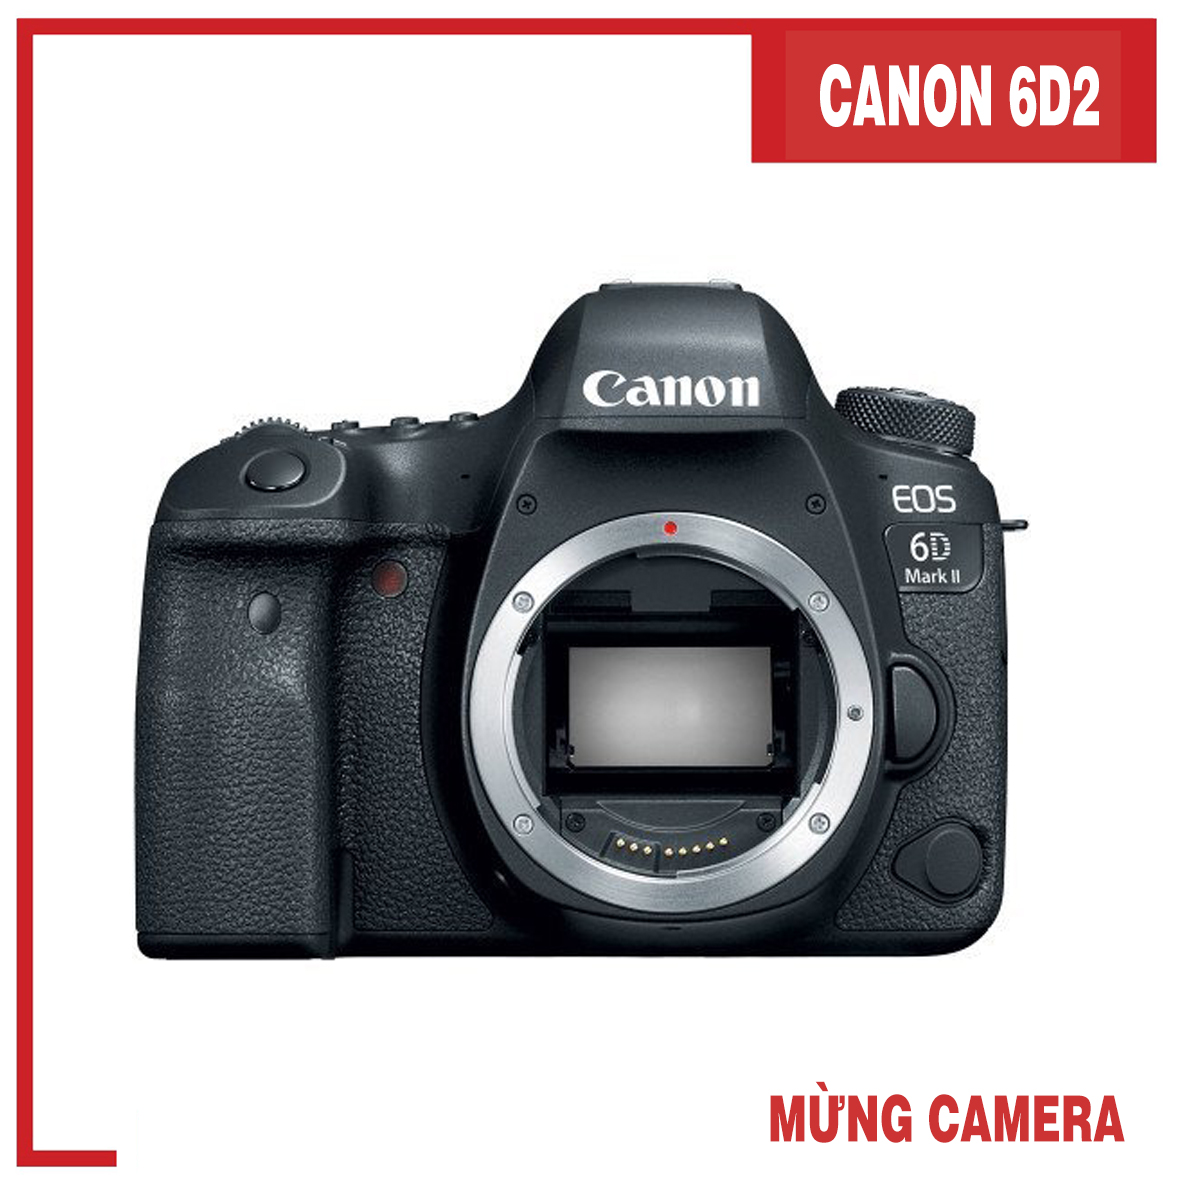 Máy ảnh Canon EOS 6D Mark II: Chọn cho mình một trải nghiệm chụp hình chân dung chuyên nghiệp với máy ảnh Canon EOS 6D Mark II. Với công nghệ Full-frame CMOS, bạn sẽ được trải nghiệm chất lượng ảnh tuyệt vời, đặc biệt là ở những dải màu tối. Hãy xem ngay hình ảnh để cảm nhận!